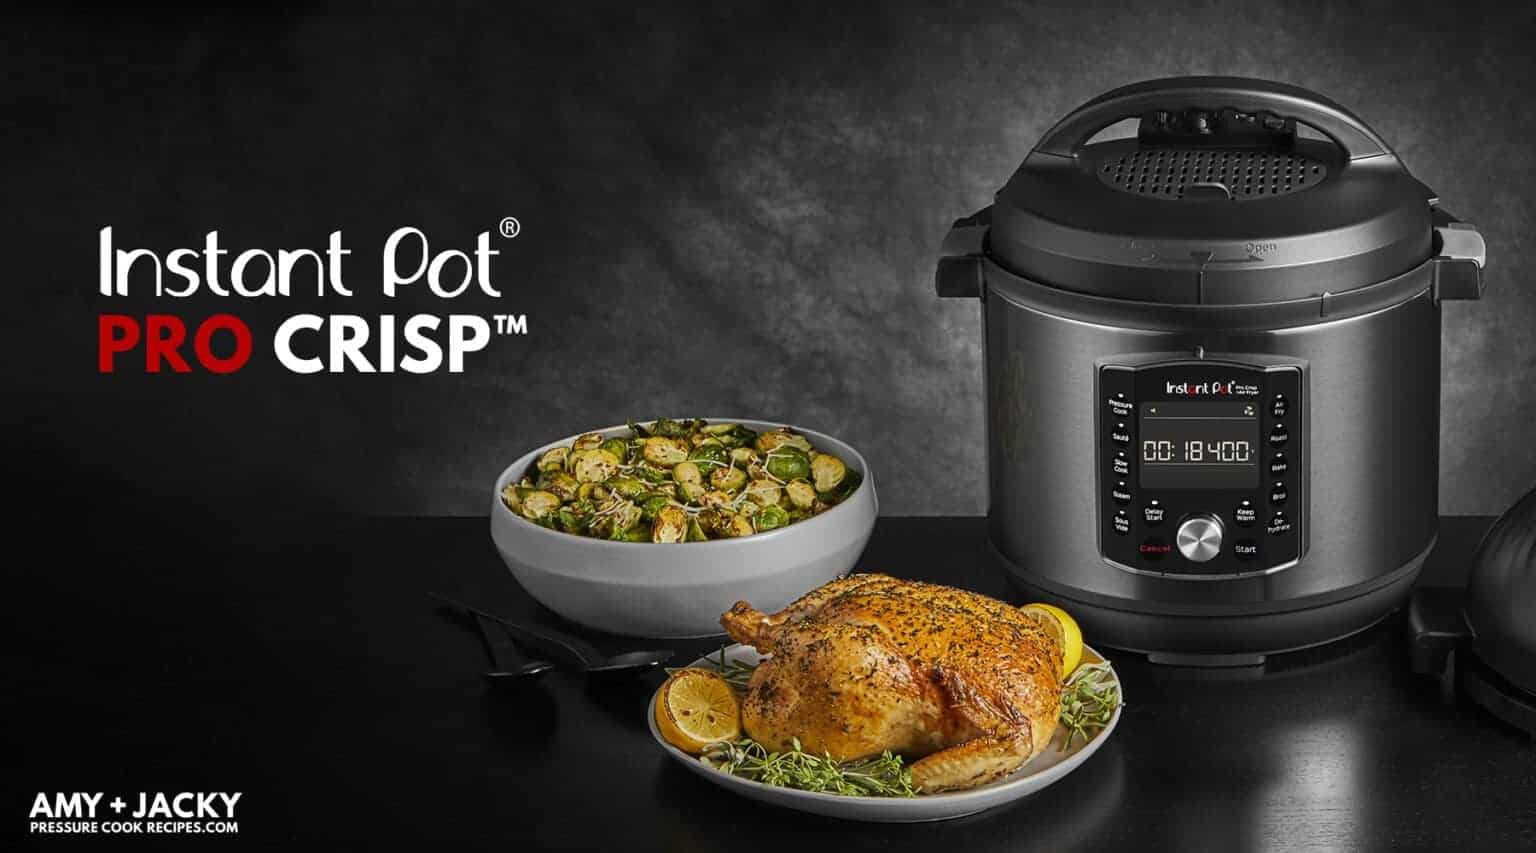 Instant Pot Pro Crisp Pressure Cooker & Air Fryer Review | Amy + Jacky